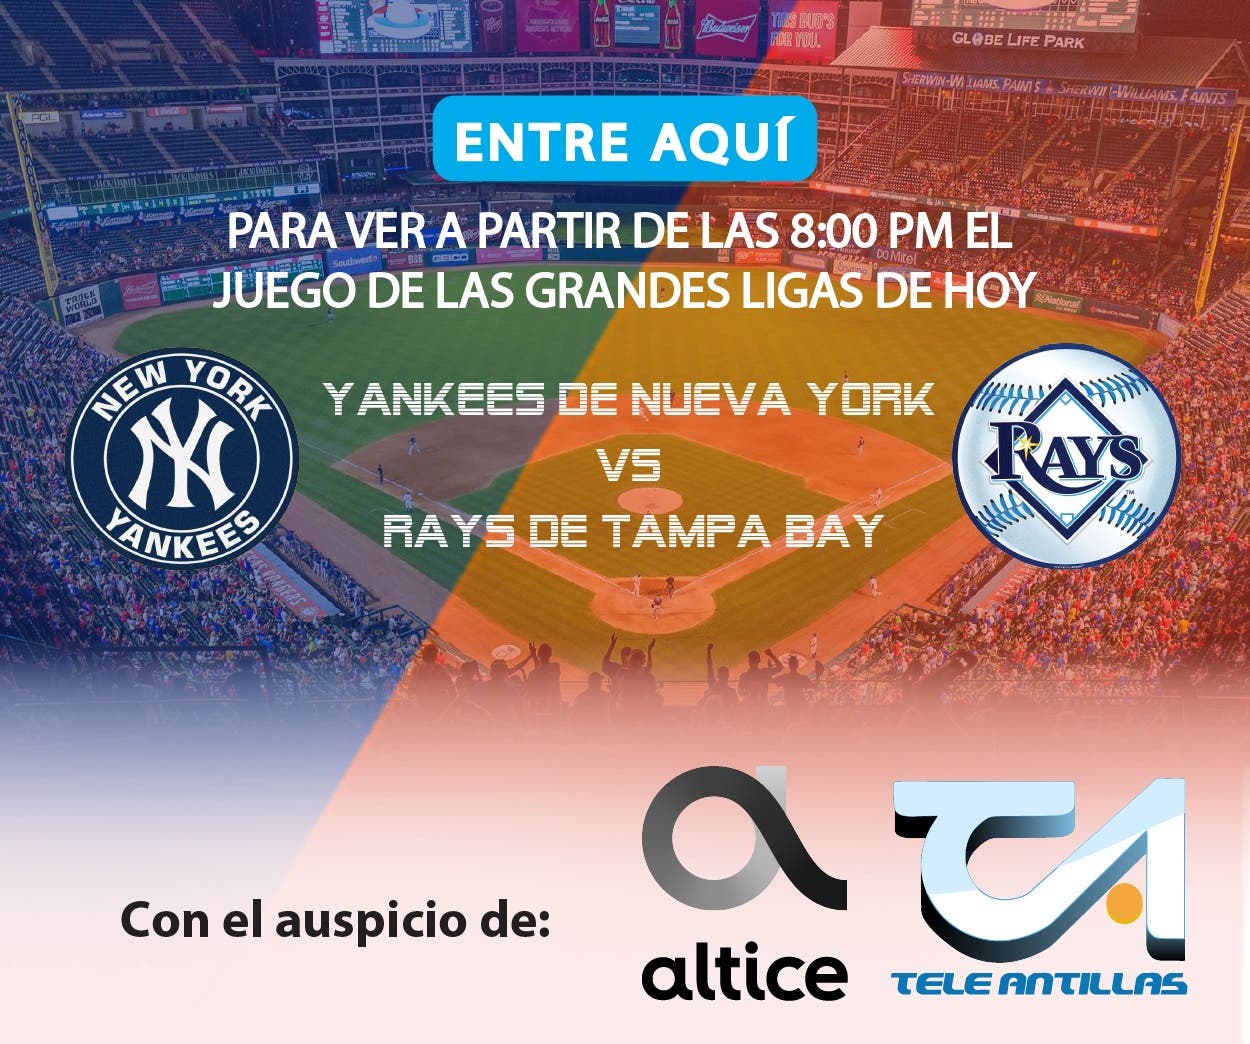 EN VIVO: Yankees de Nueva York vs. Rays de Tampa Bay